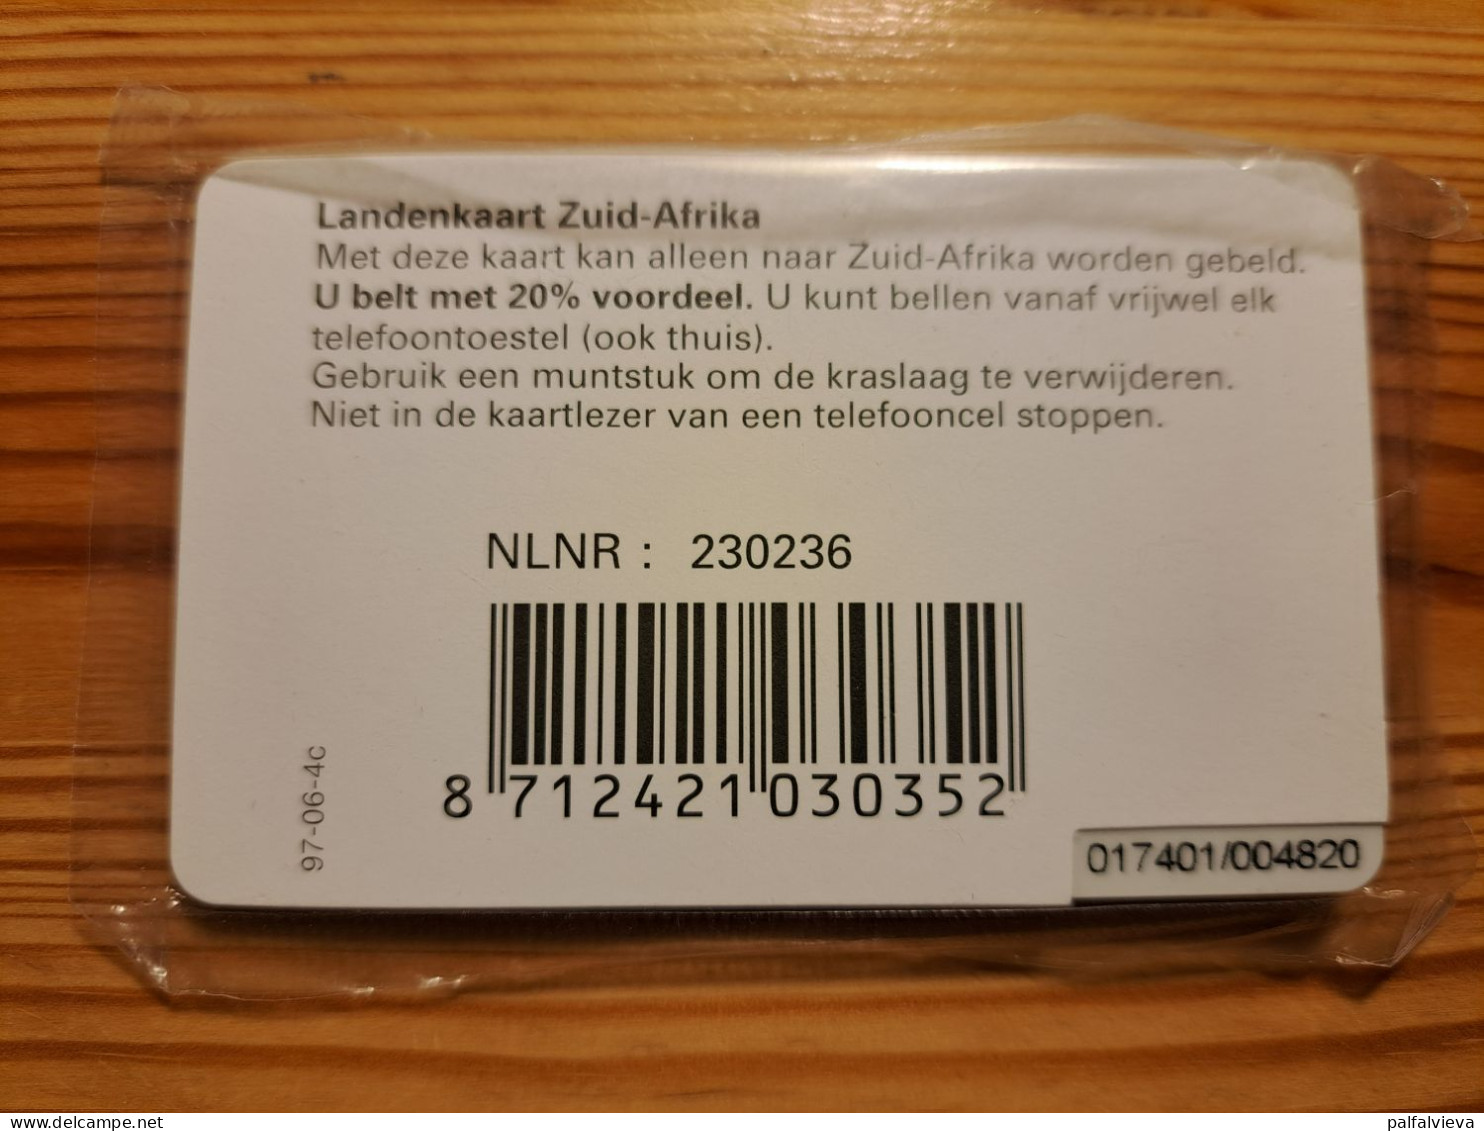 Prepaid Phonecard Netherlands, Kpn Telecom - Zuid-Afrikakaart, South Africa - Mint In Blister - [3] Handy-, Prepaid- U. Aufladkarten